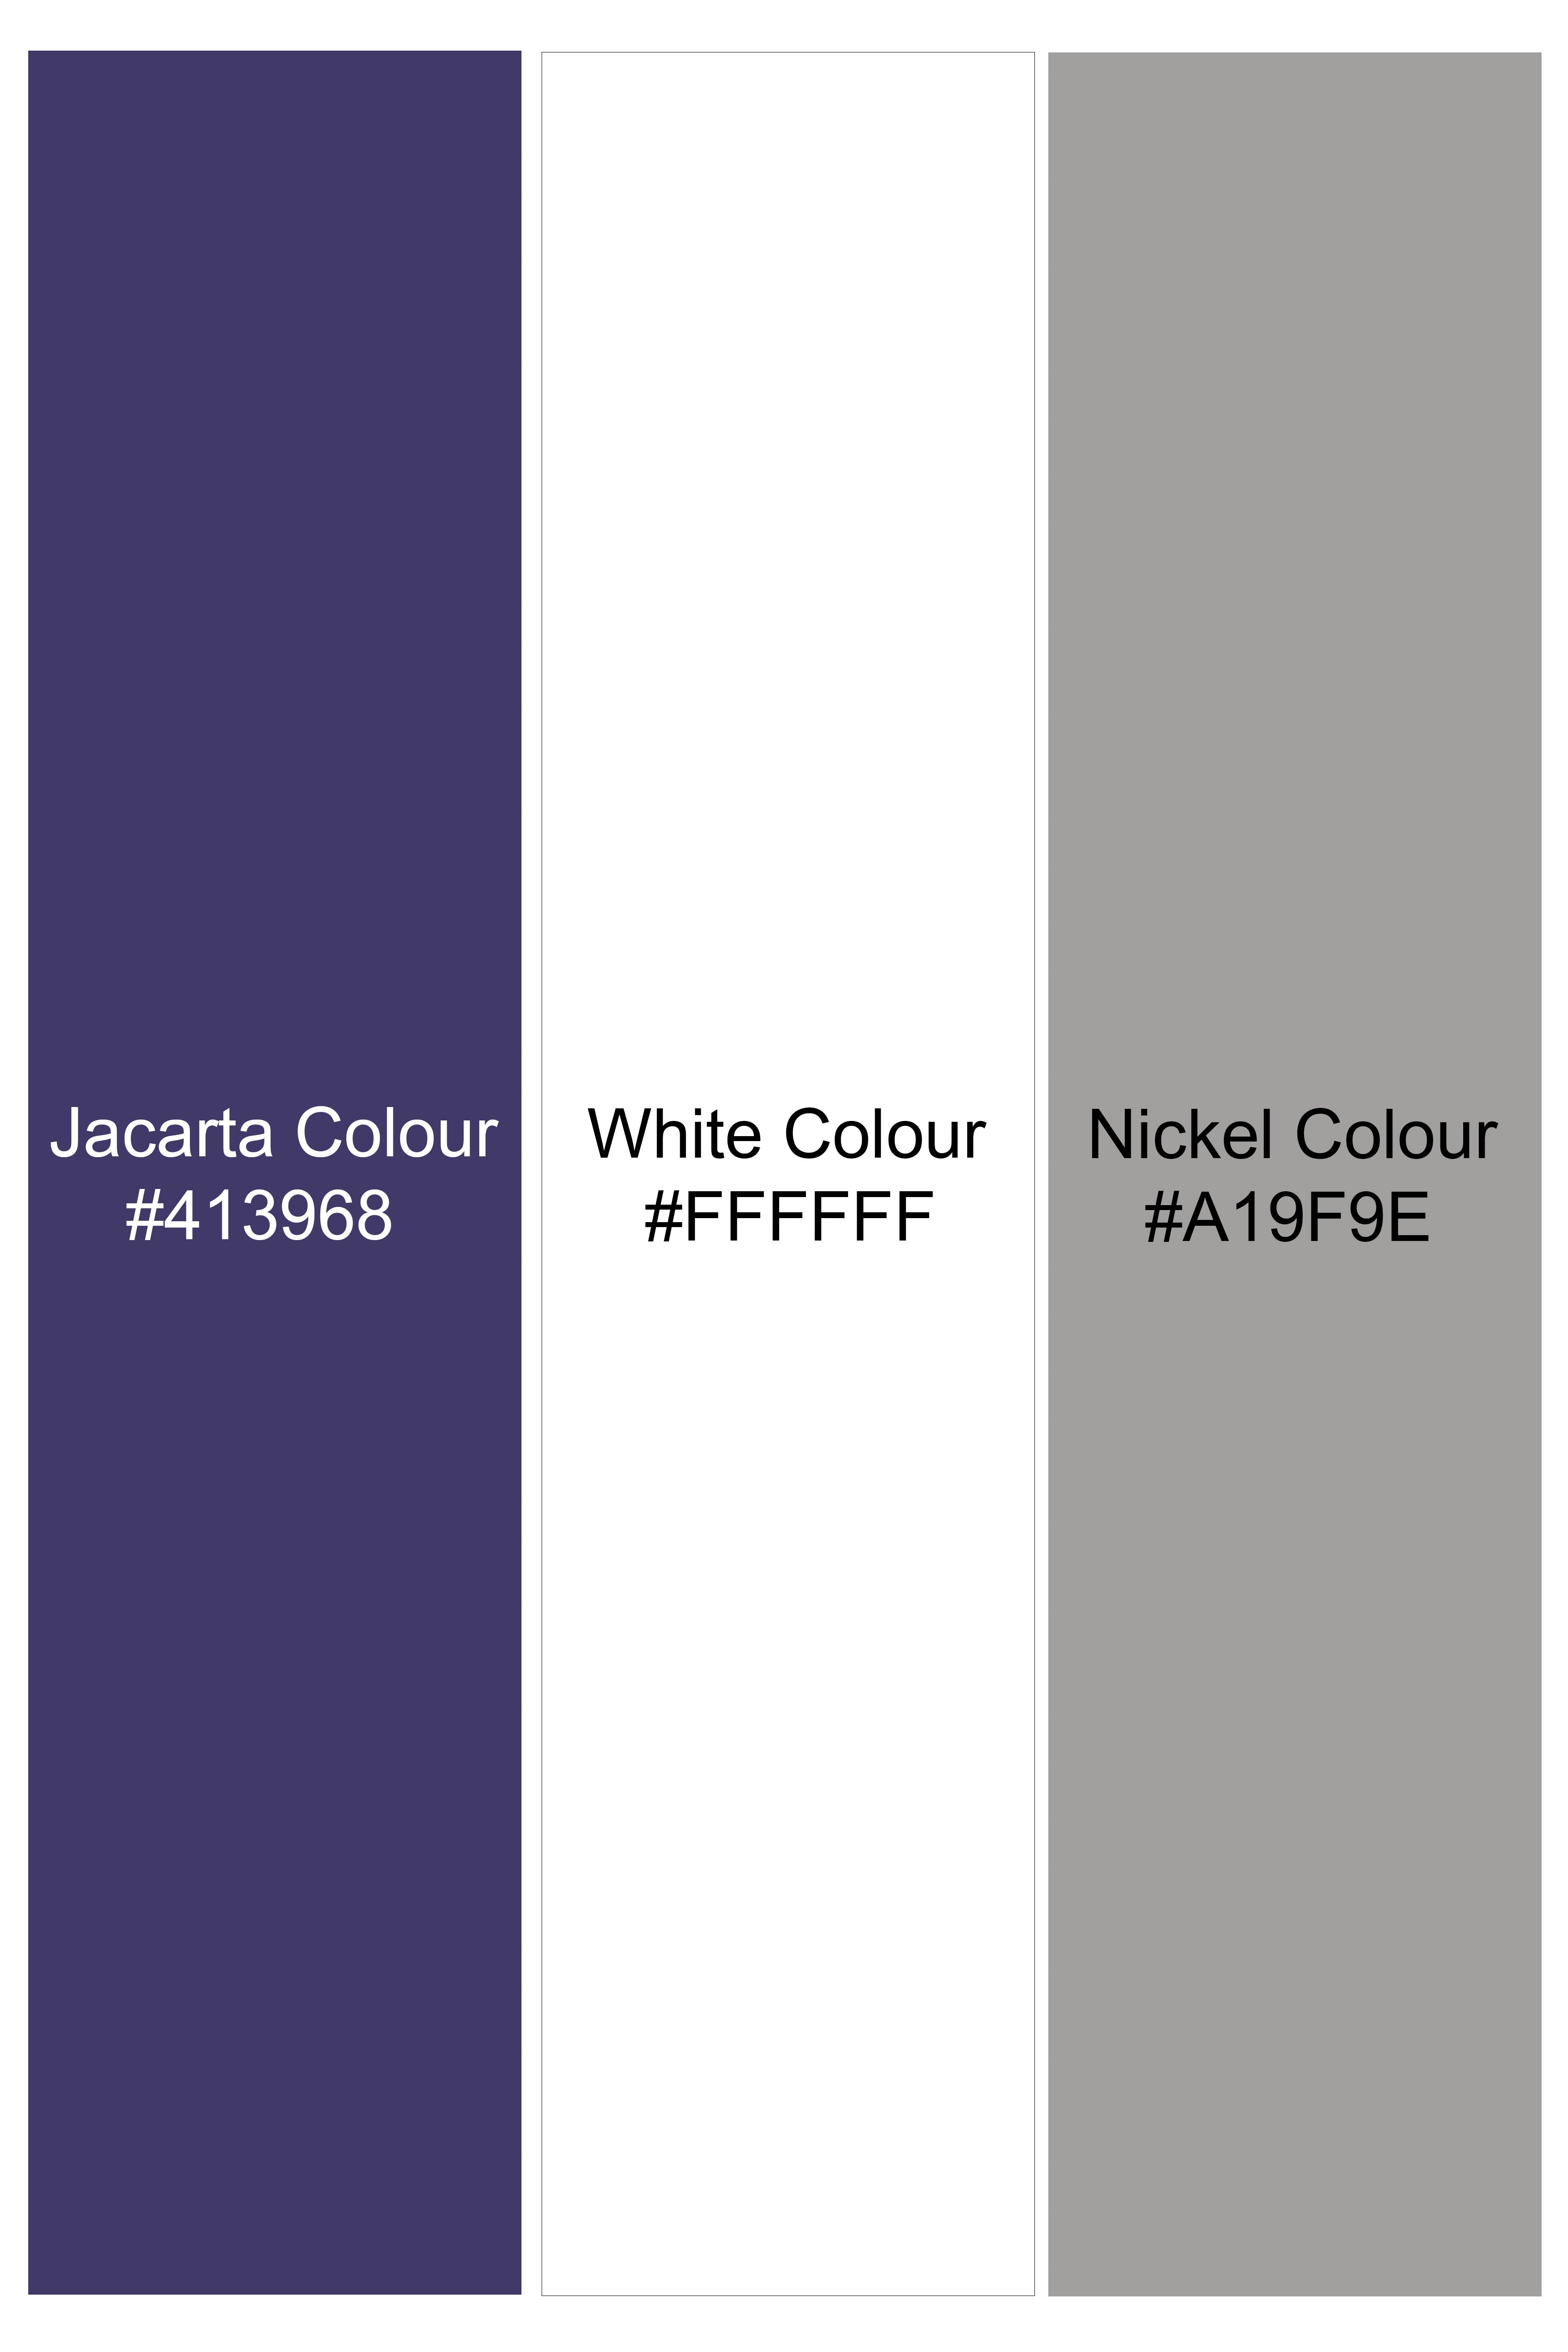 Jacarta Purple and White Moroccan Printed Premium Cotton Boxer